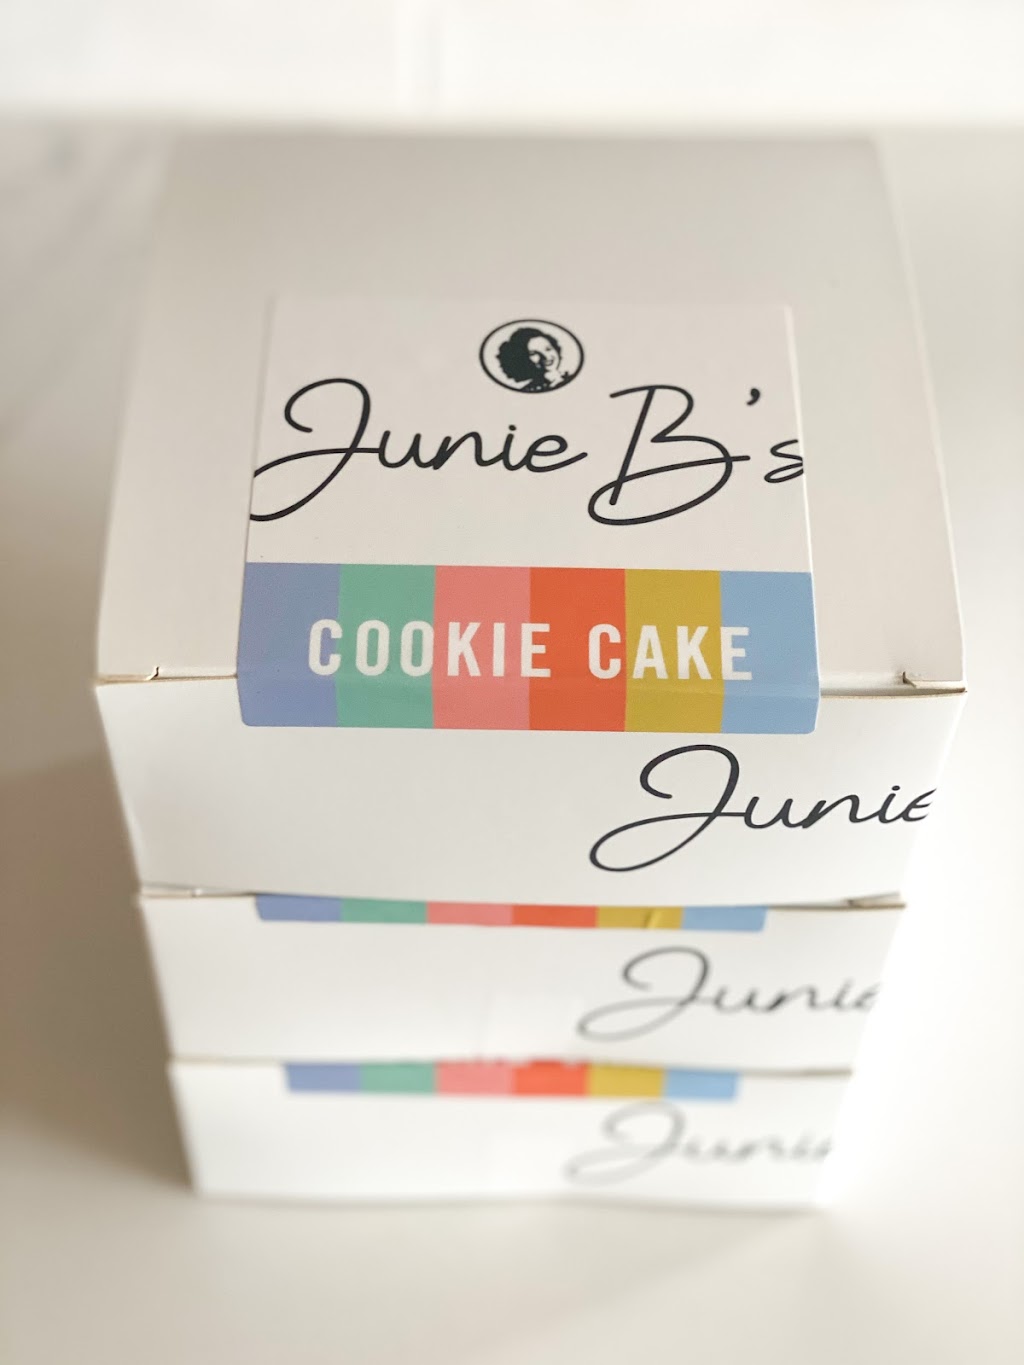 Junie Bs Bake Shop | 3108 Glenn Rd, Durham, NC 27704, USA | Phone: (919) 521-3418